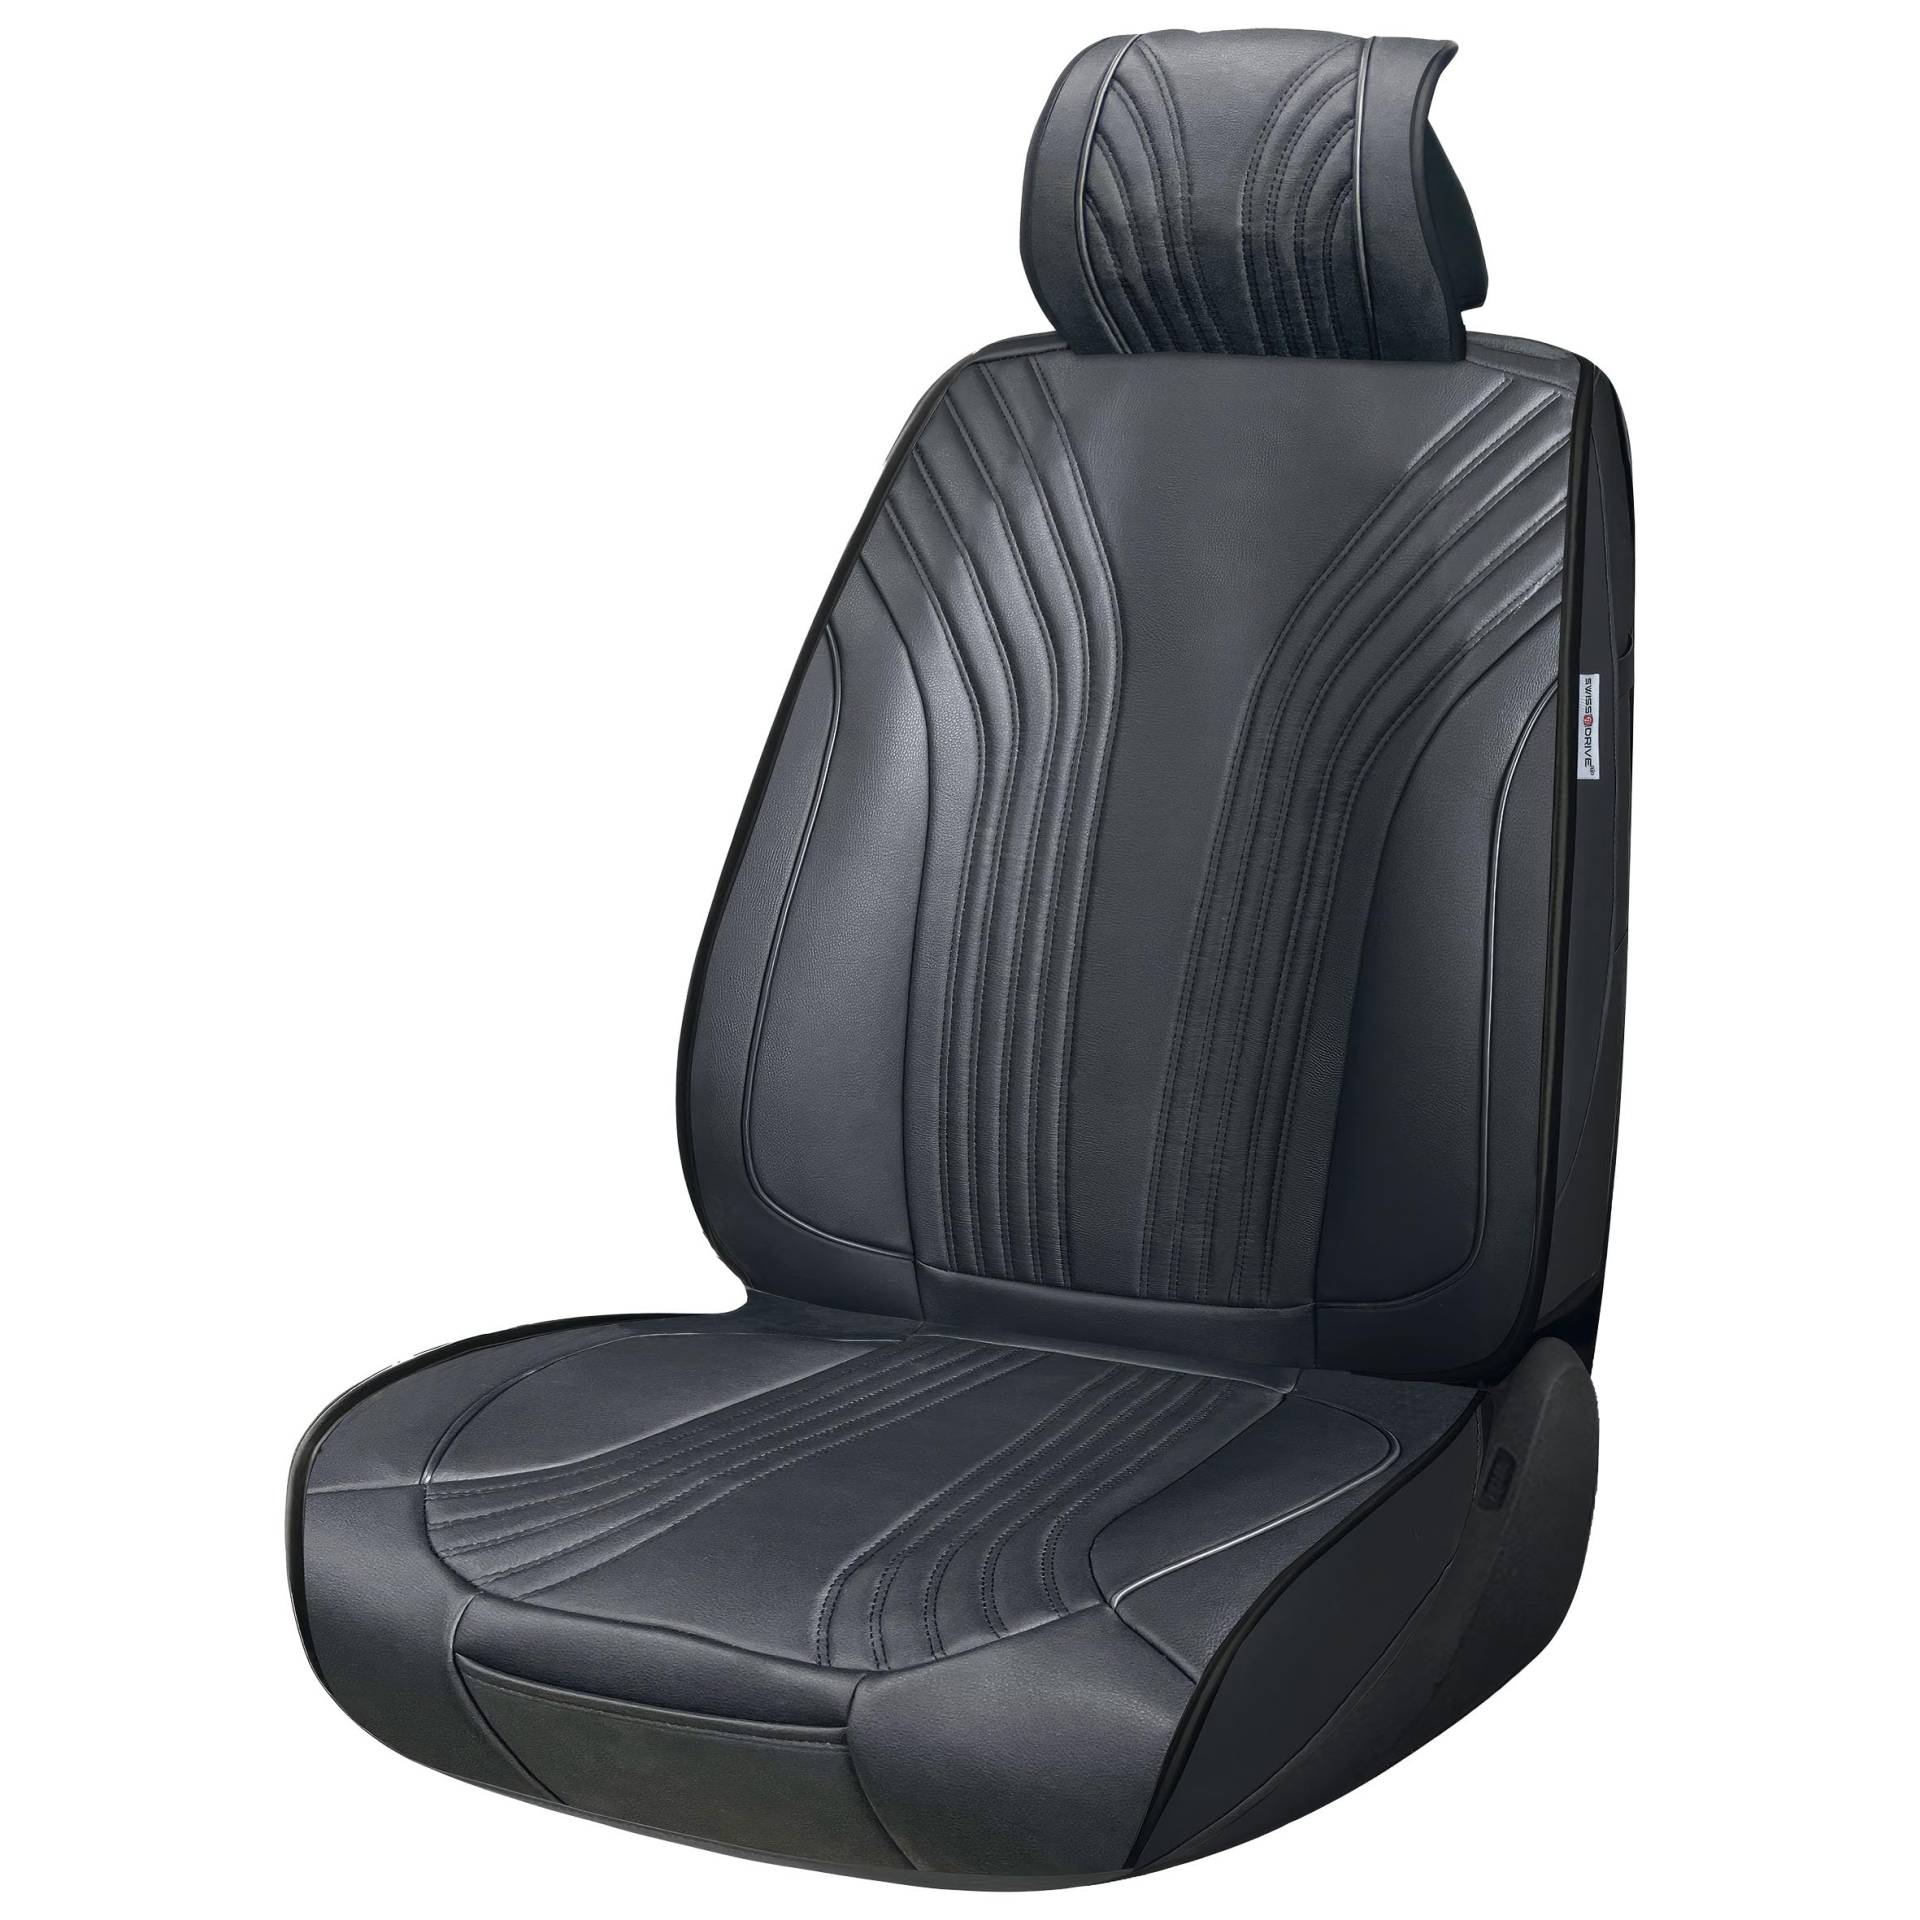 SUMEX Universal-Sitzbezug für Vordersitze und Rückenlehne, Modell Prestige, kompatibel mit Airbag, Optimo Komfort, Farbe: Schwarz, inklusive Taschen und elastischen Bändern zur Anpassung von Sumex